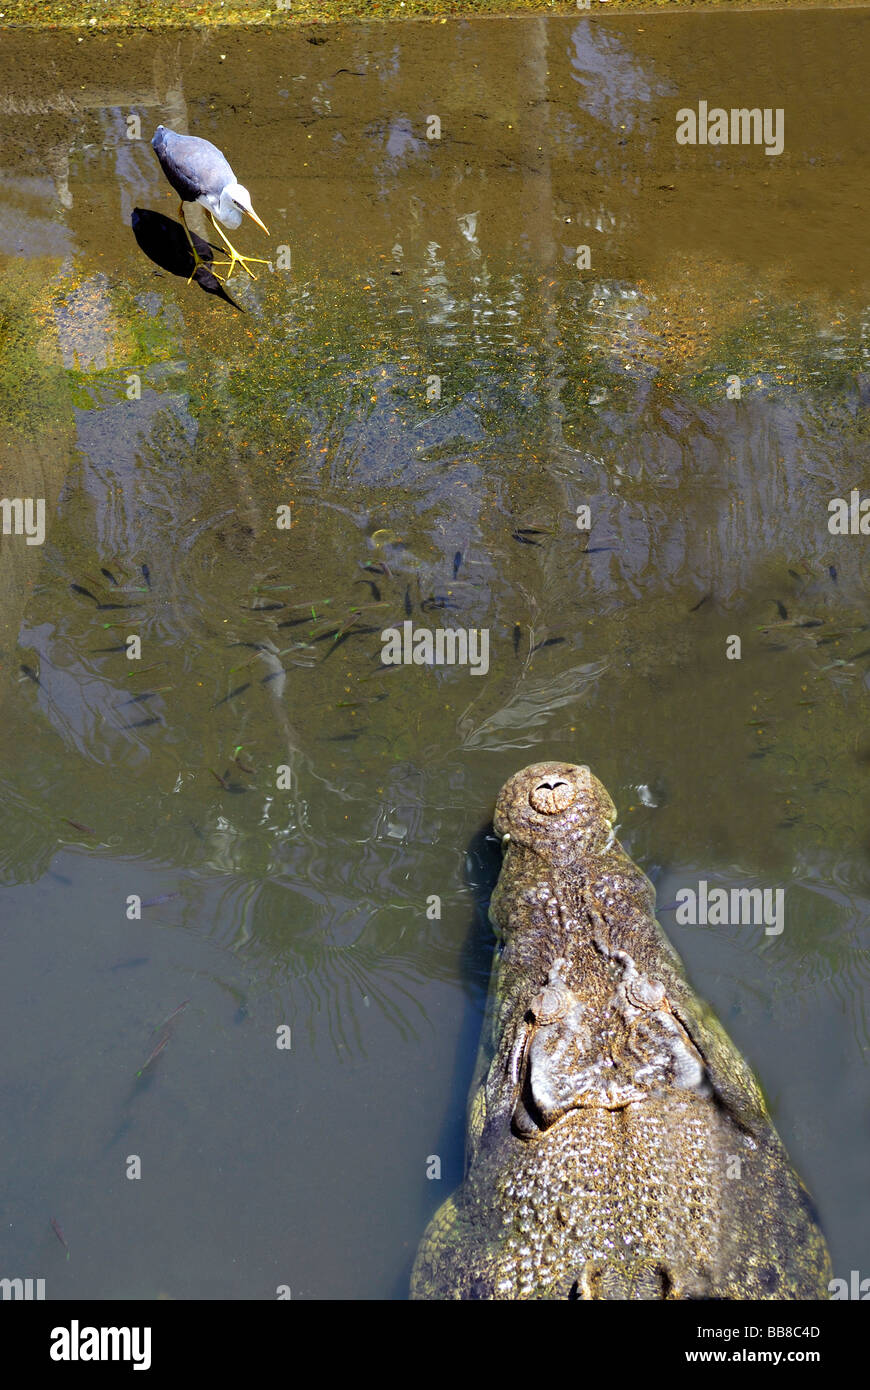 El cocodrilo de agua salada (Crocodylus porosus) y aves zancudas, acechando, Crocodylus Park, Darwin, Territorio del Norte, Australia Foto de stock